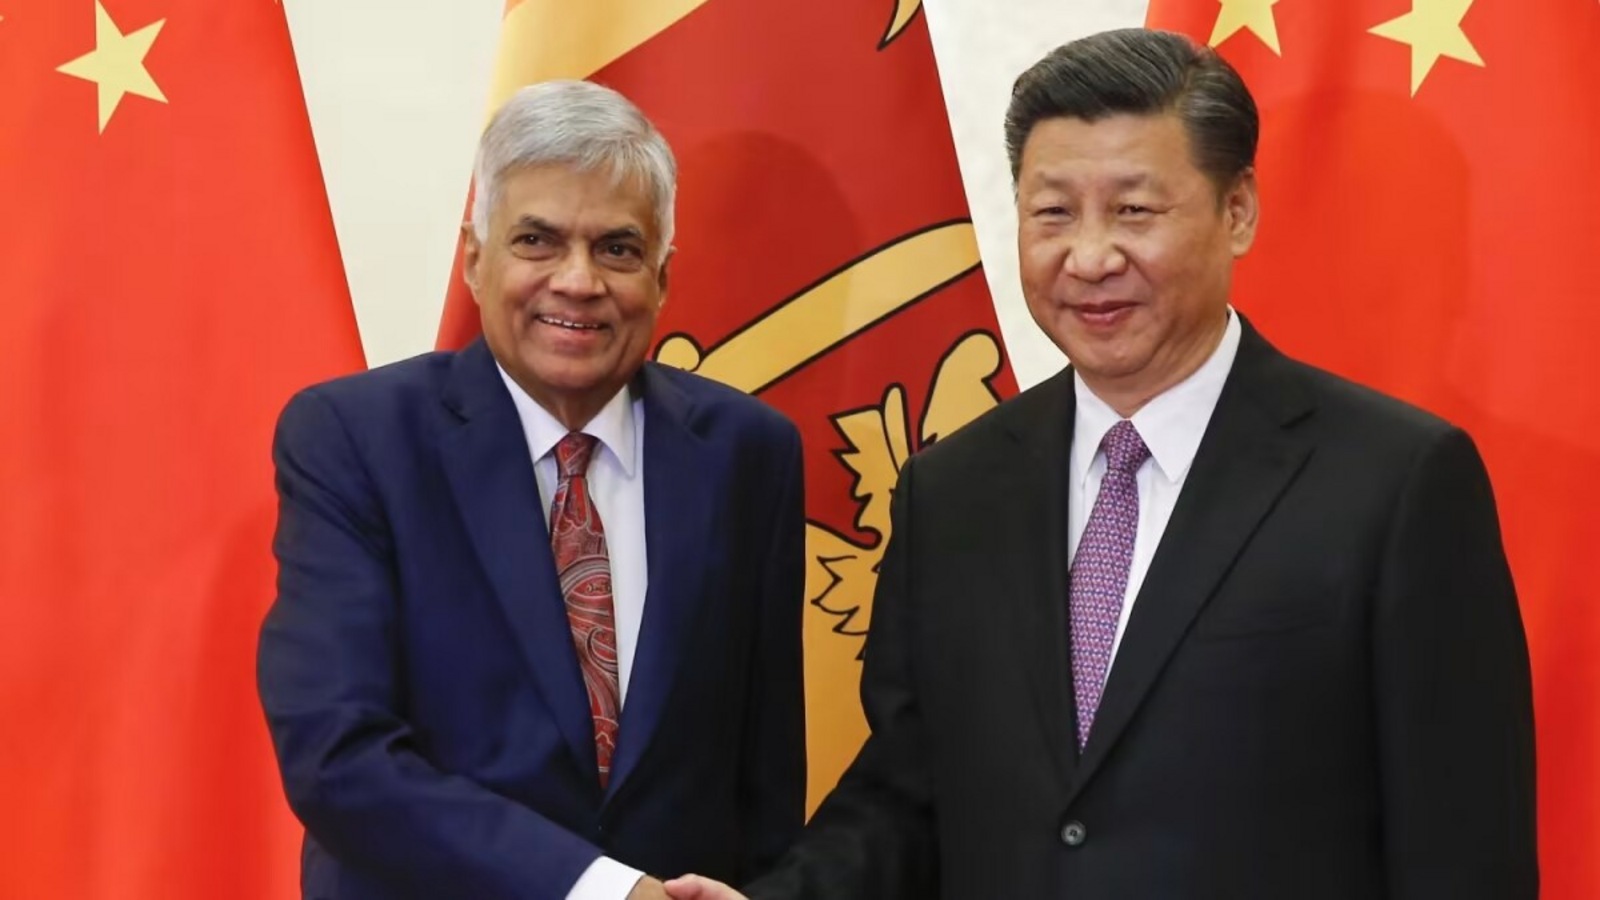 中国与国际货币基金组织在斯里兰卡冻结债务问题上存在分歧| 世界新闻